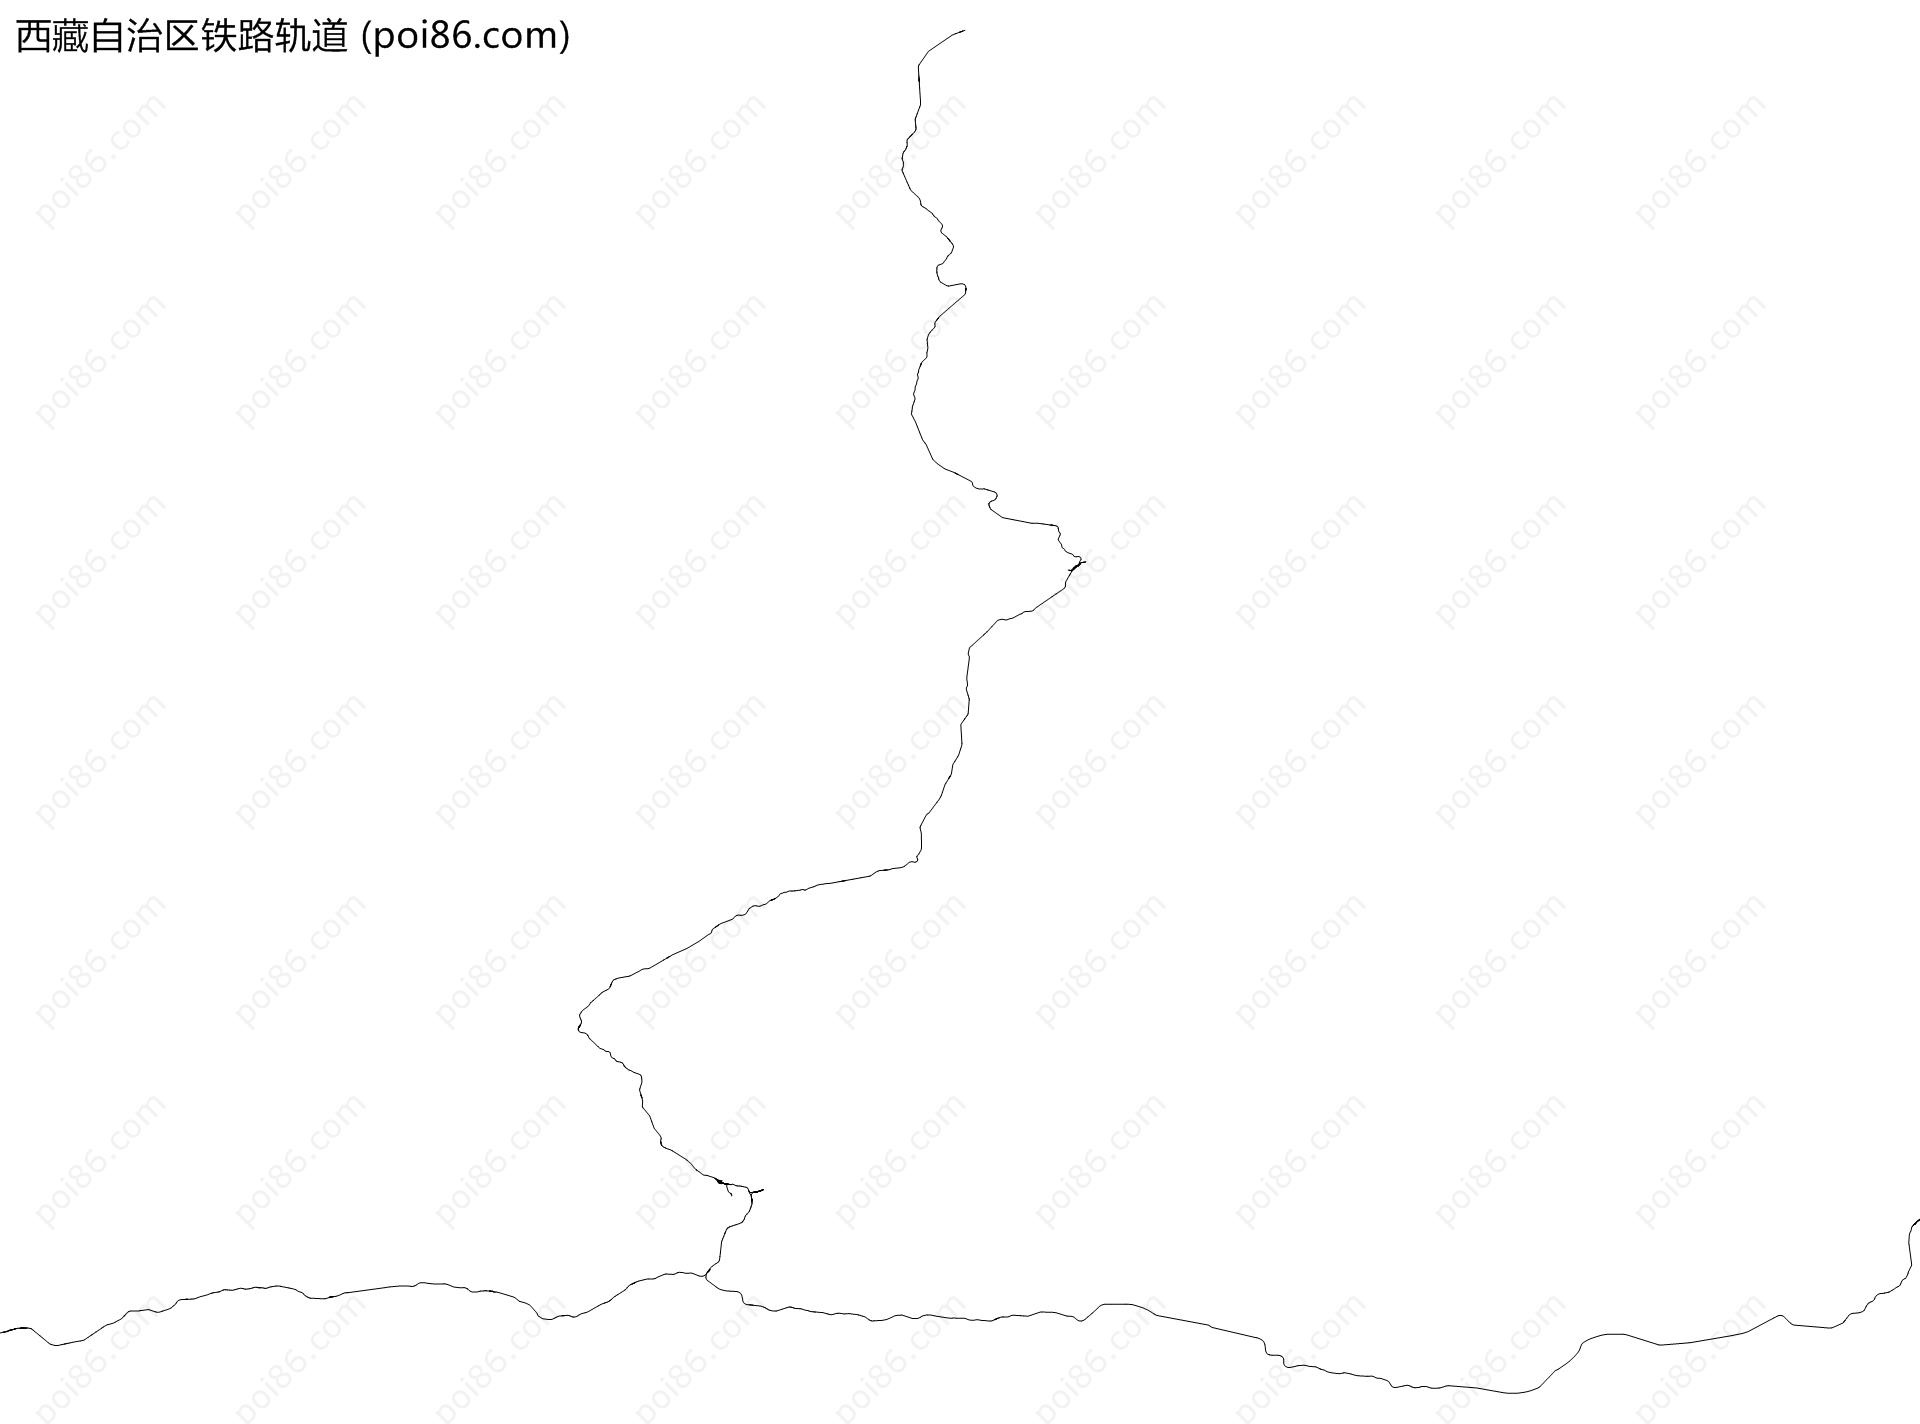 西藏自治区铁路轨道地图